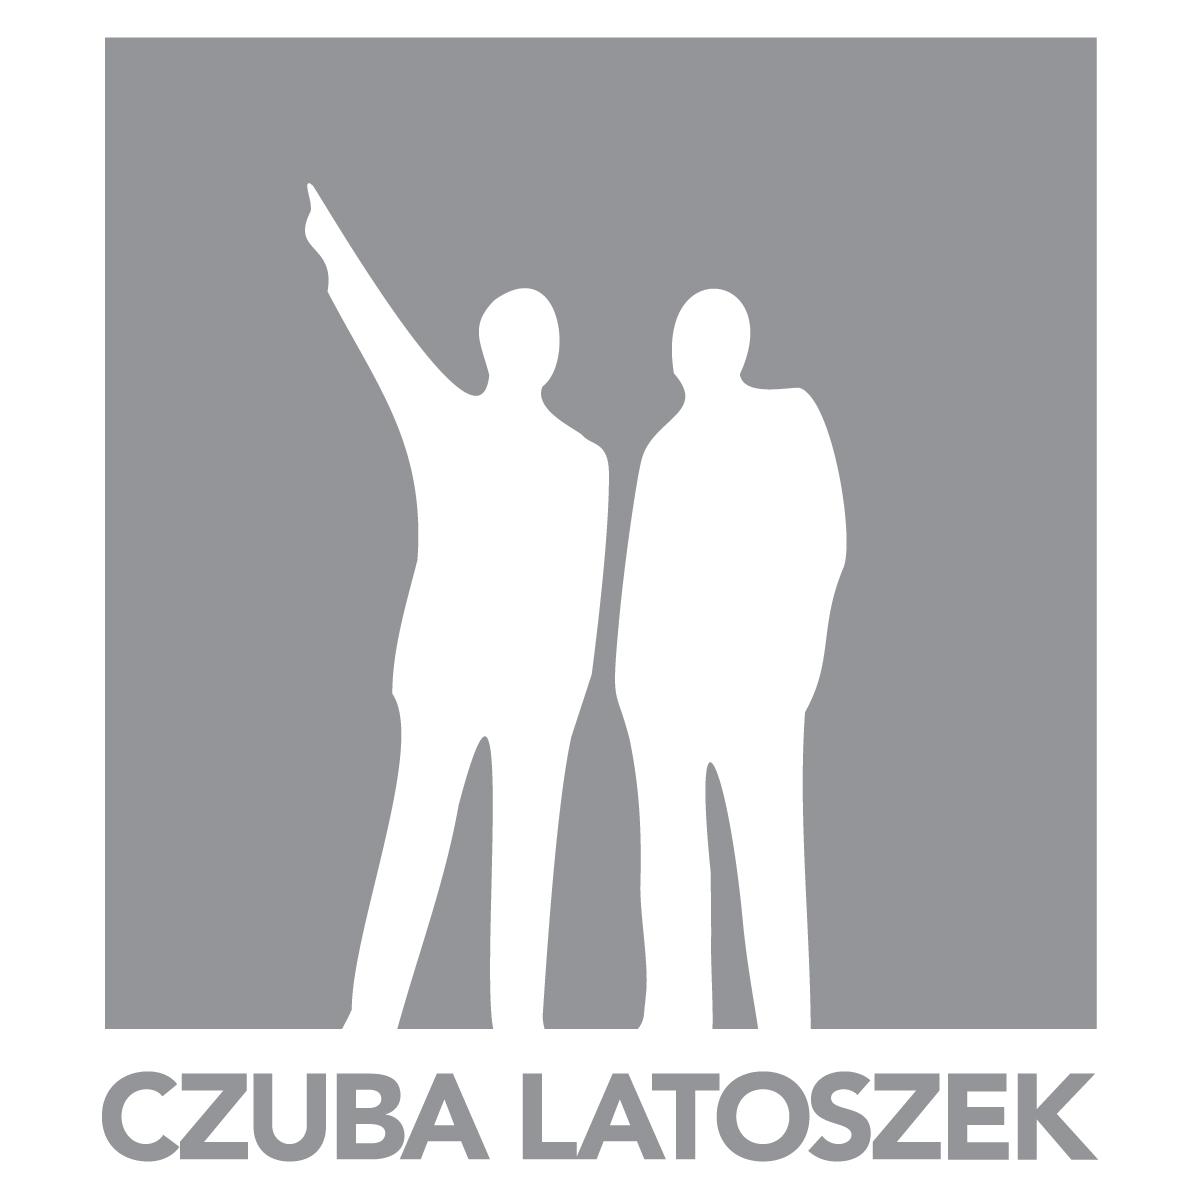 Piotr Czuba, Maciej Latoszek 